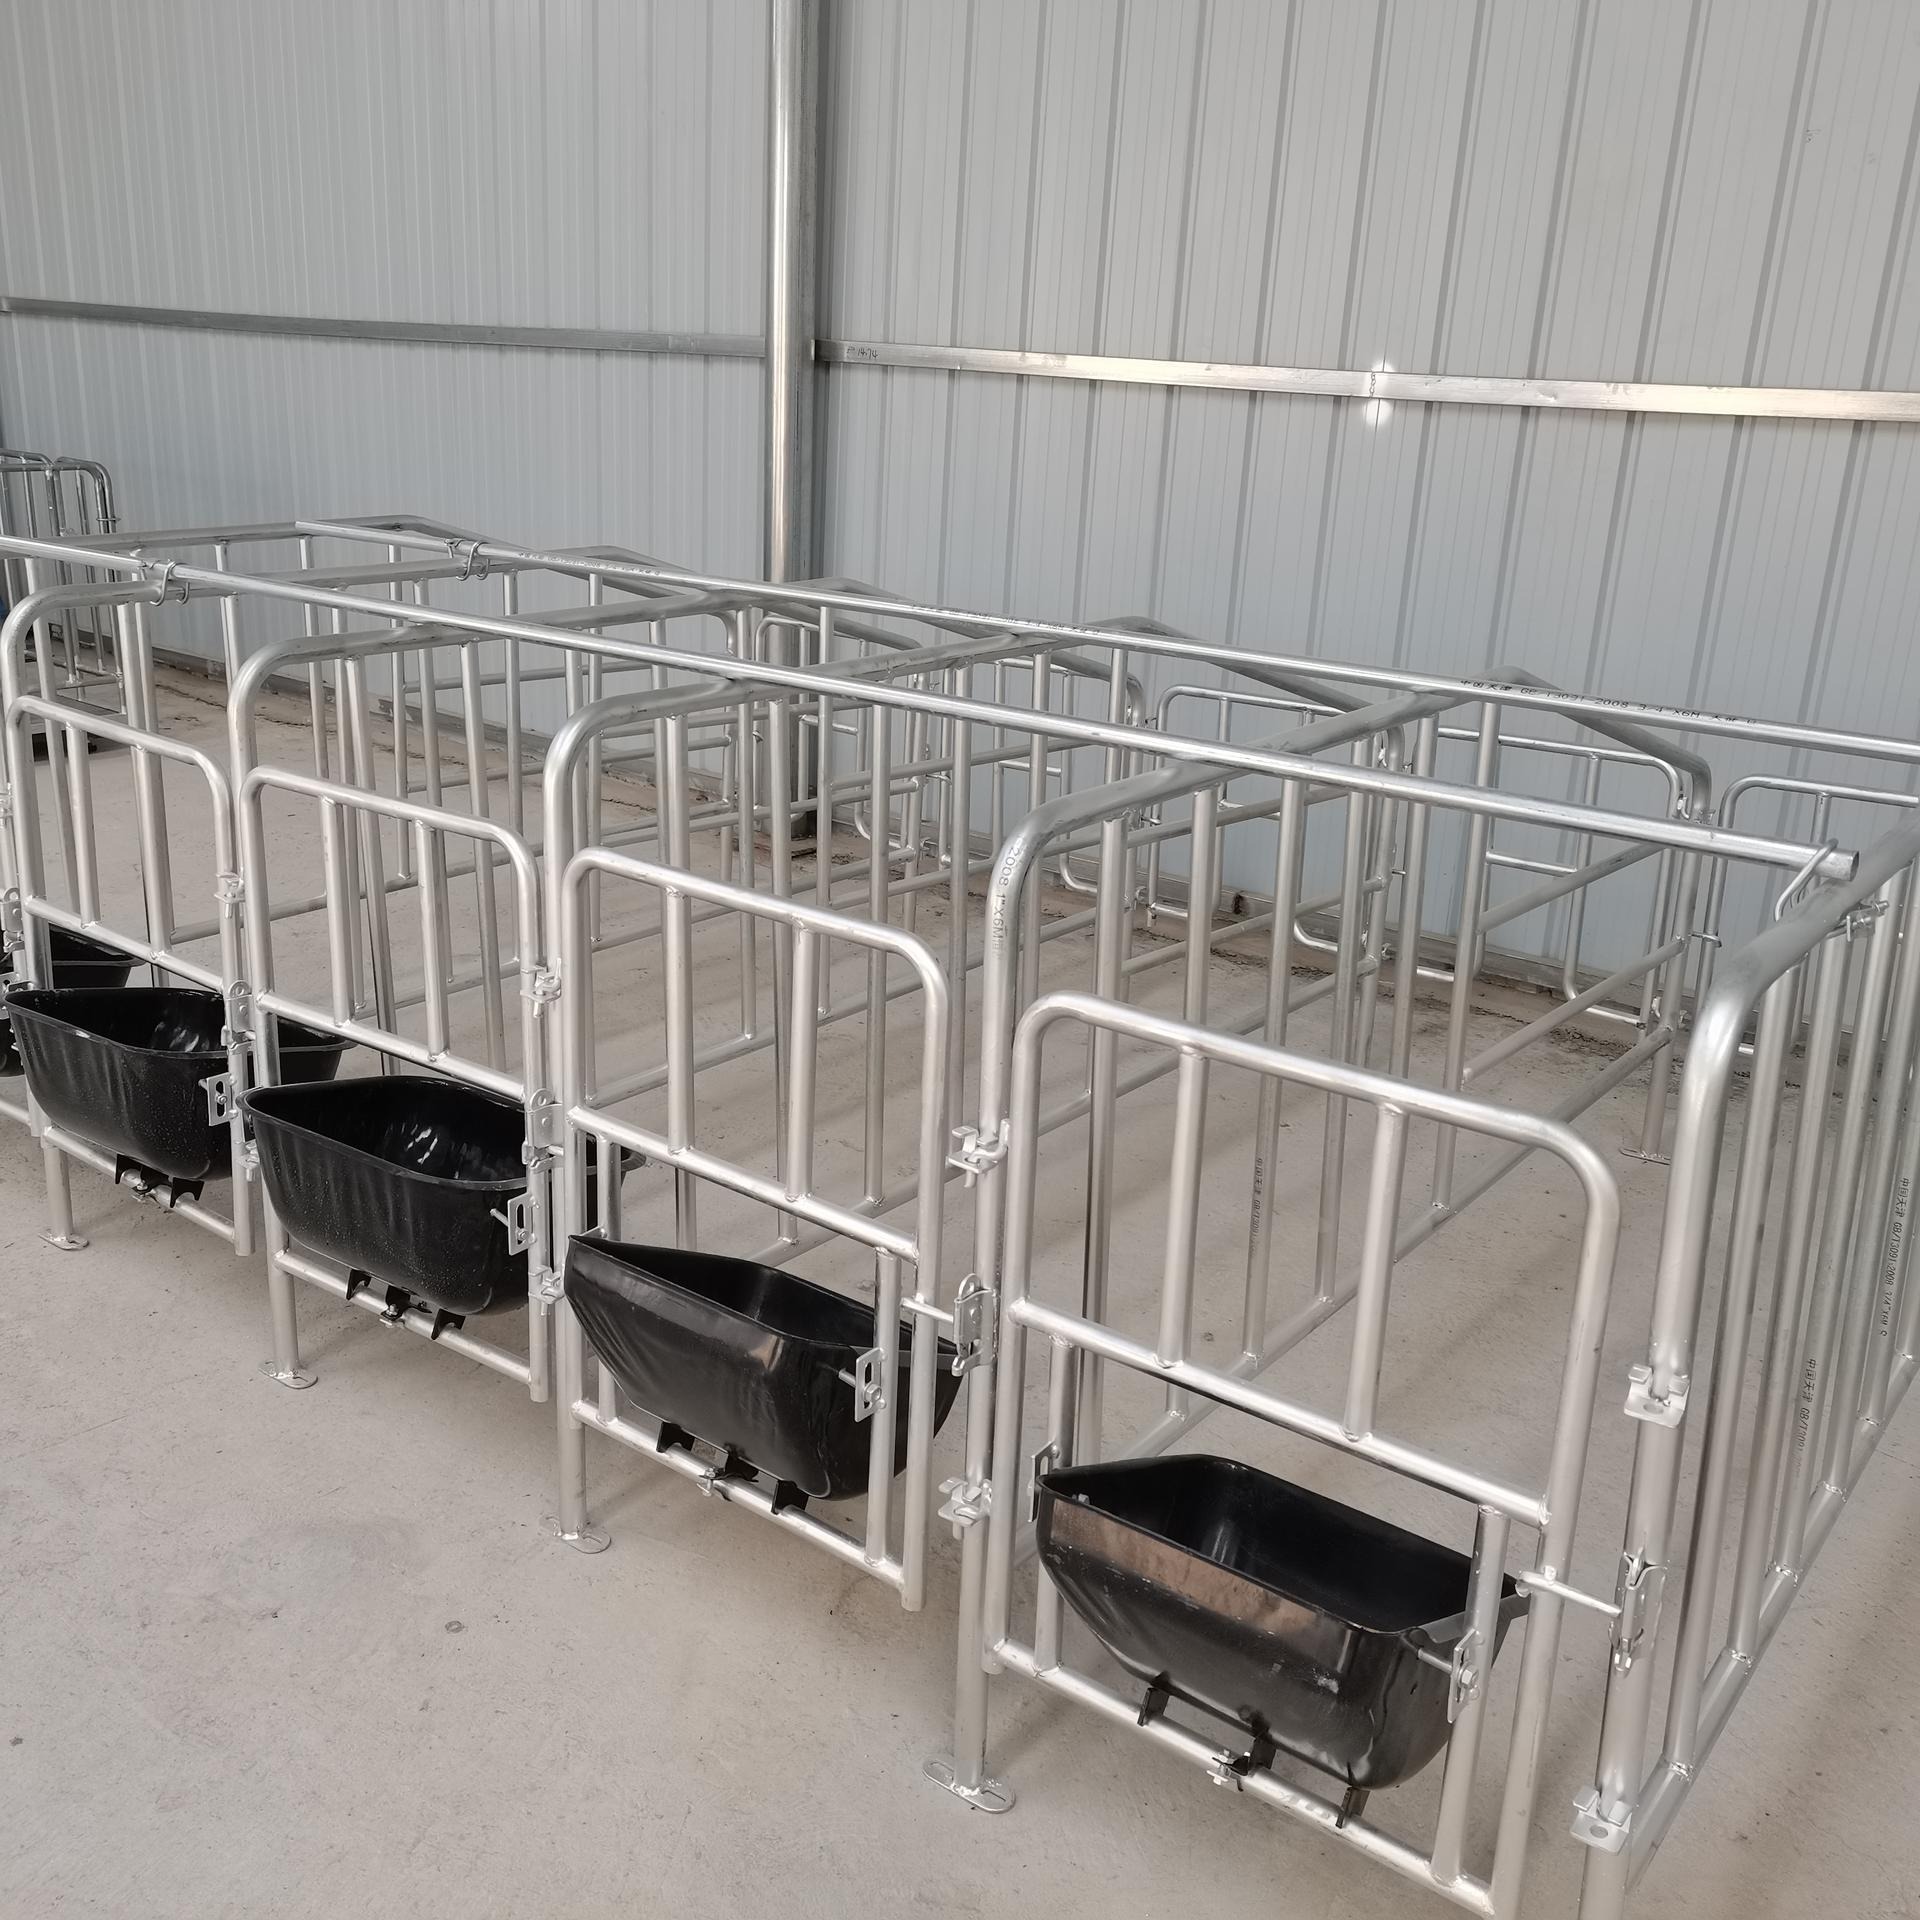 高床限位养猪定位栏 海丫养殖 养猪设备落地式定位栏干净卫生